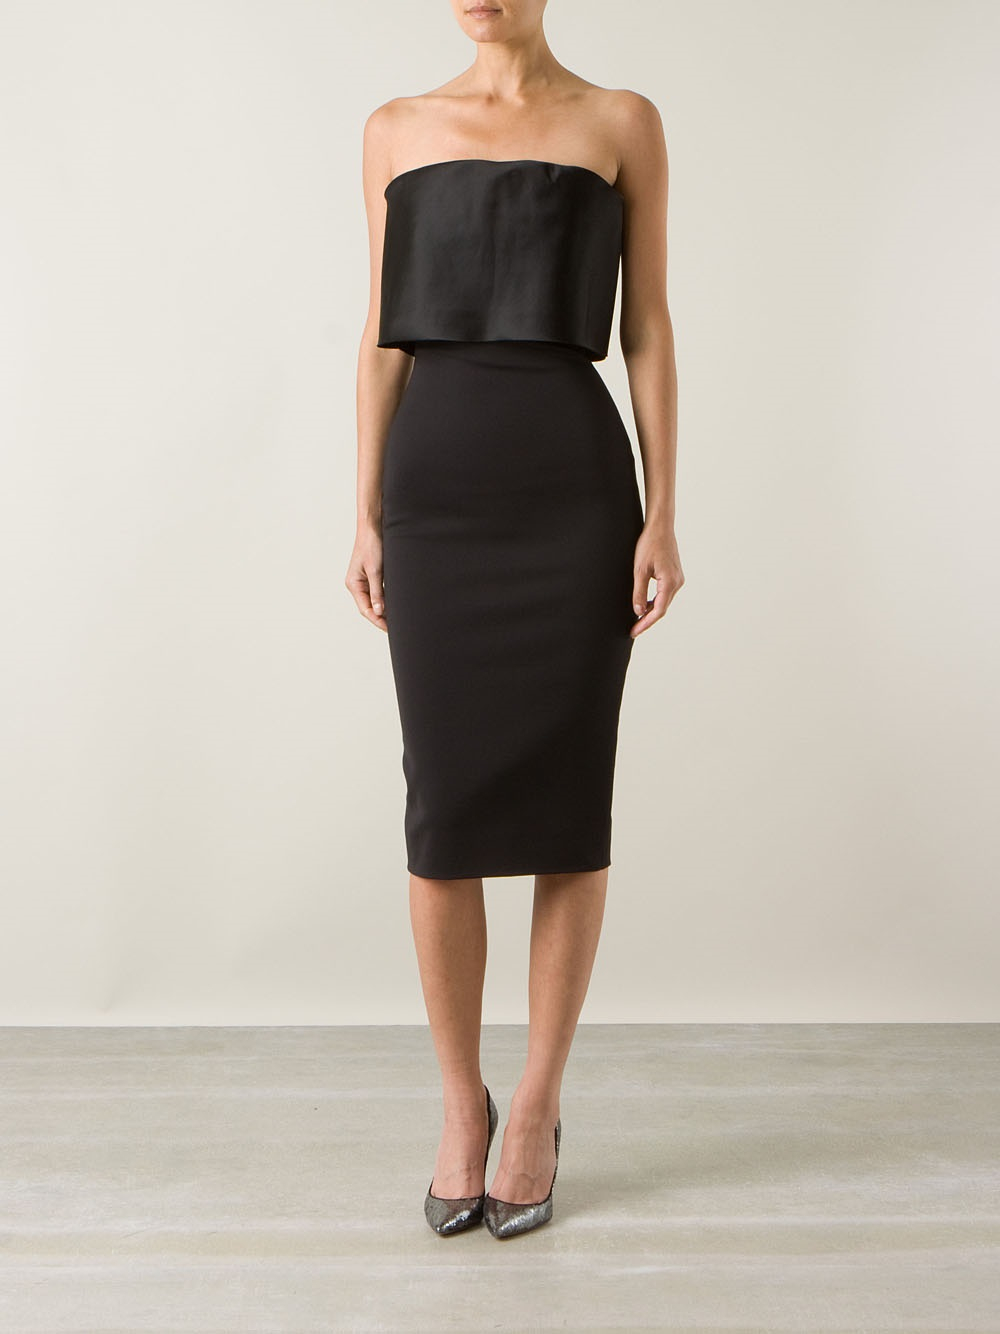 Victoria Beckham Strapless Bustier Dress in Black - Lyst